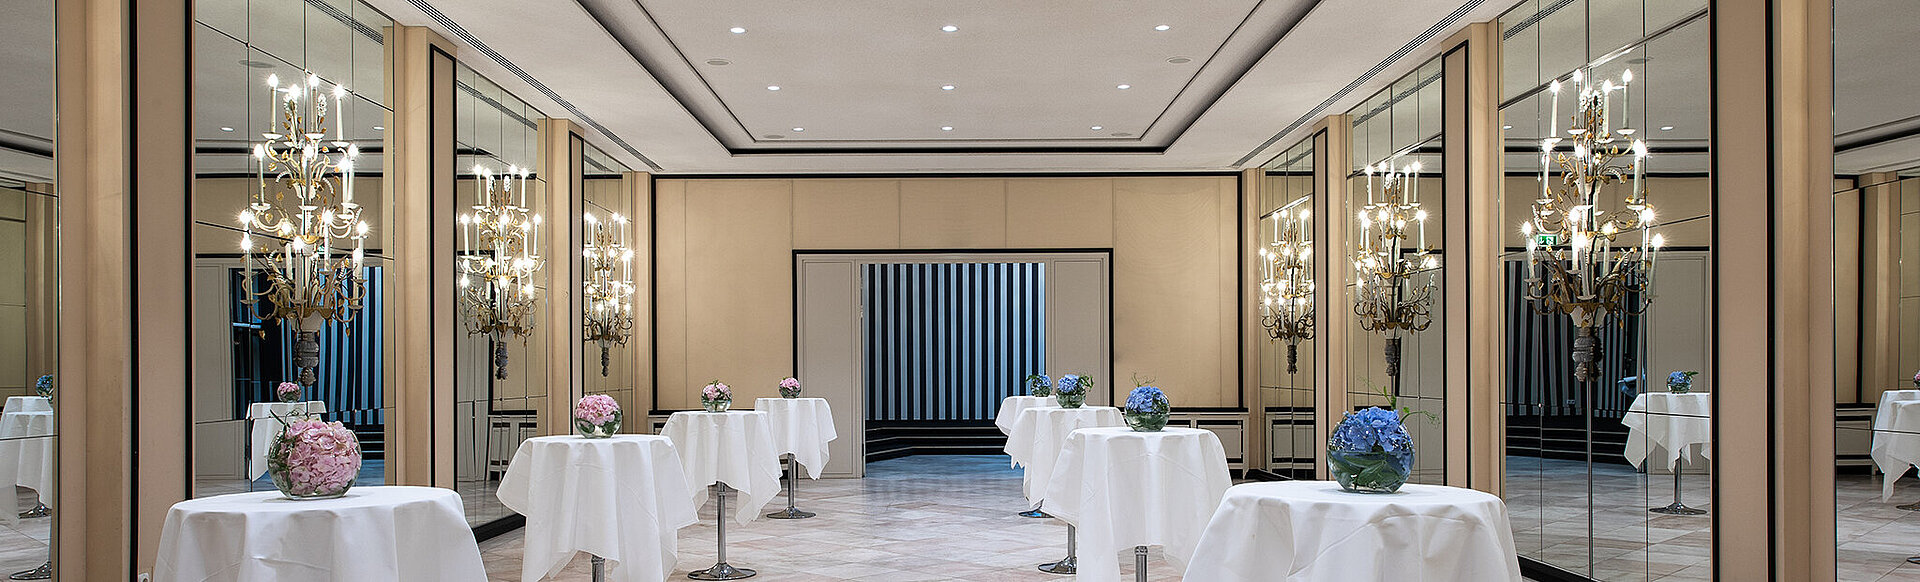 AMERON Bonn Hotel Königshof Tagungen und veranstaltungen Digitale Konferenzen Private Feiern Geburtstage Hochzeiten